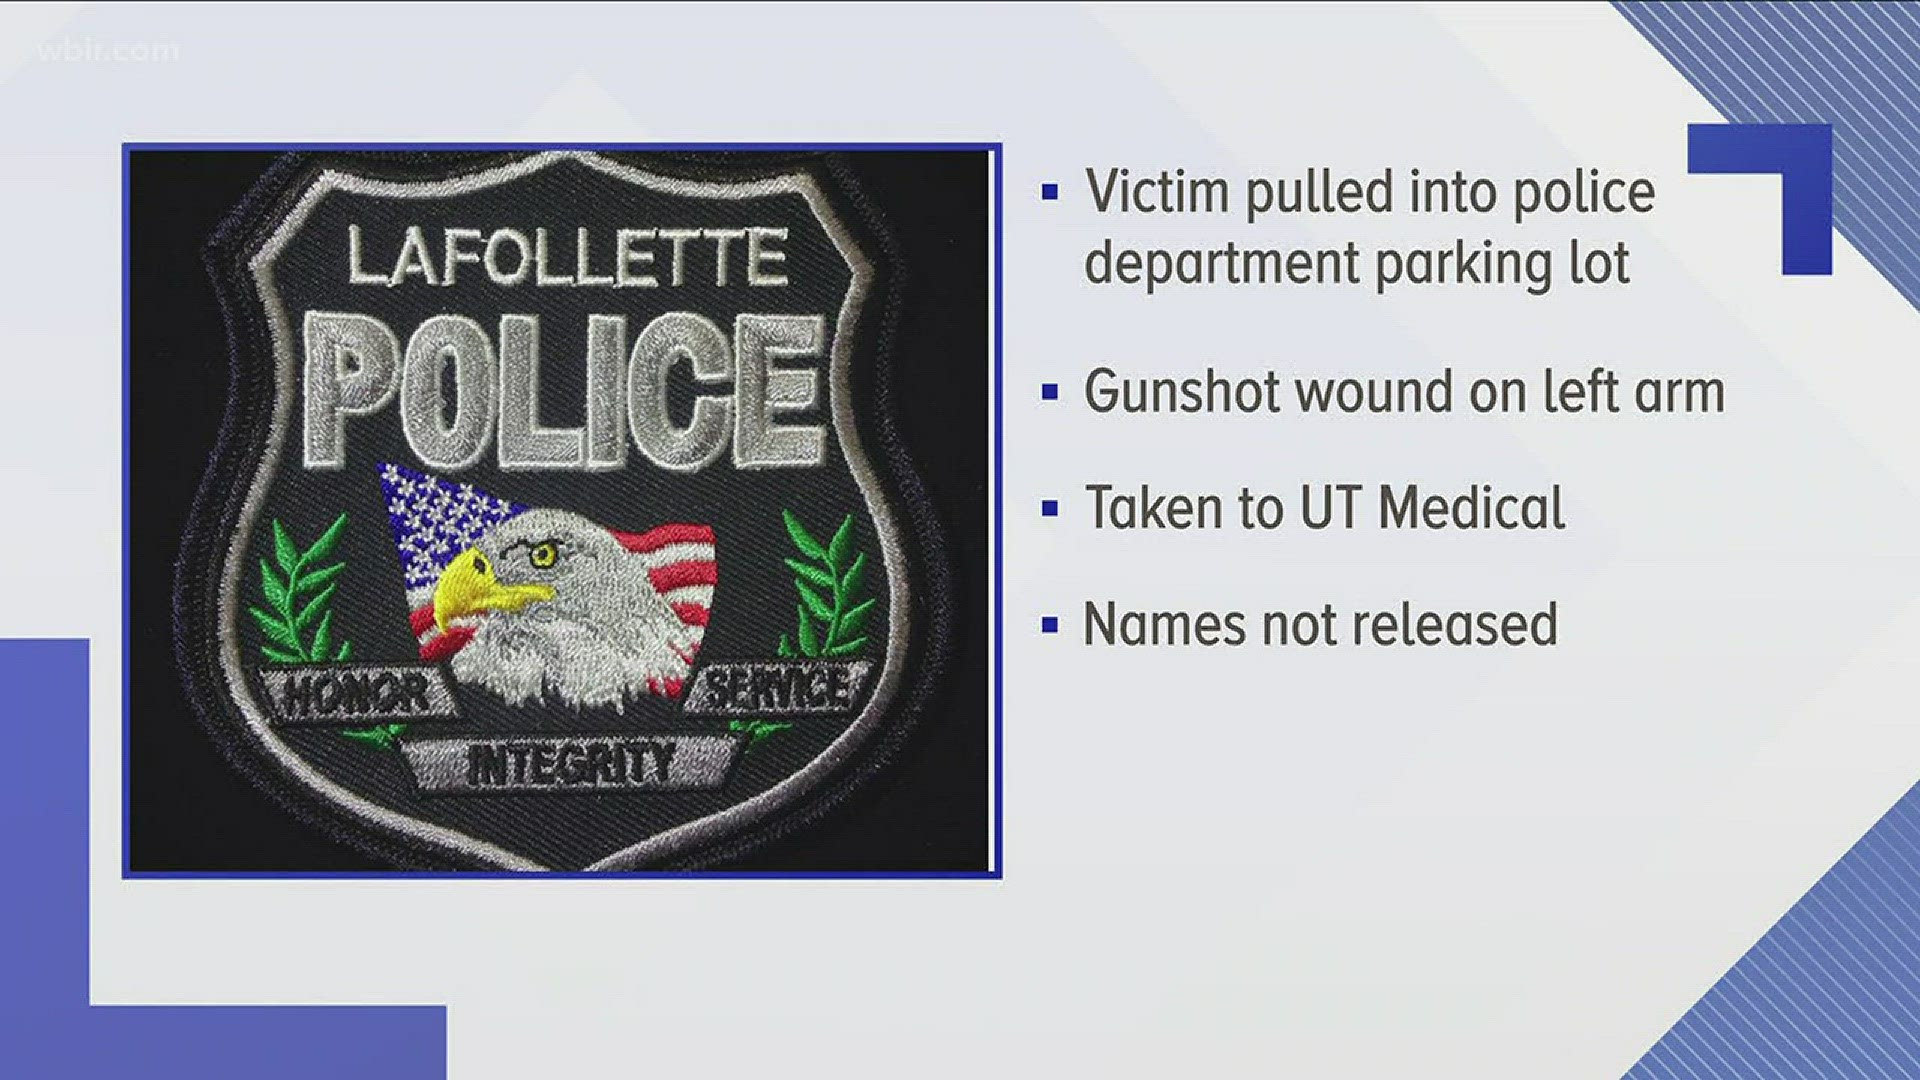 Feb. 13, 2018: A suspect is in custody following a shooting in LaFollette.